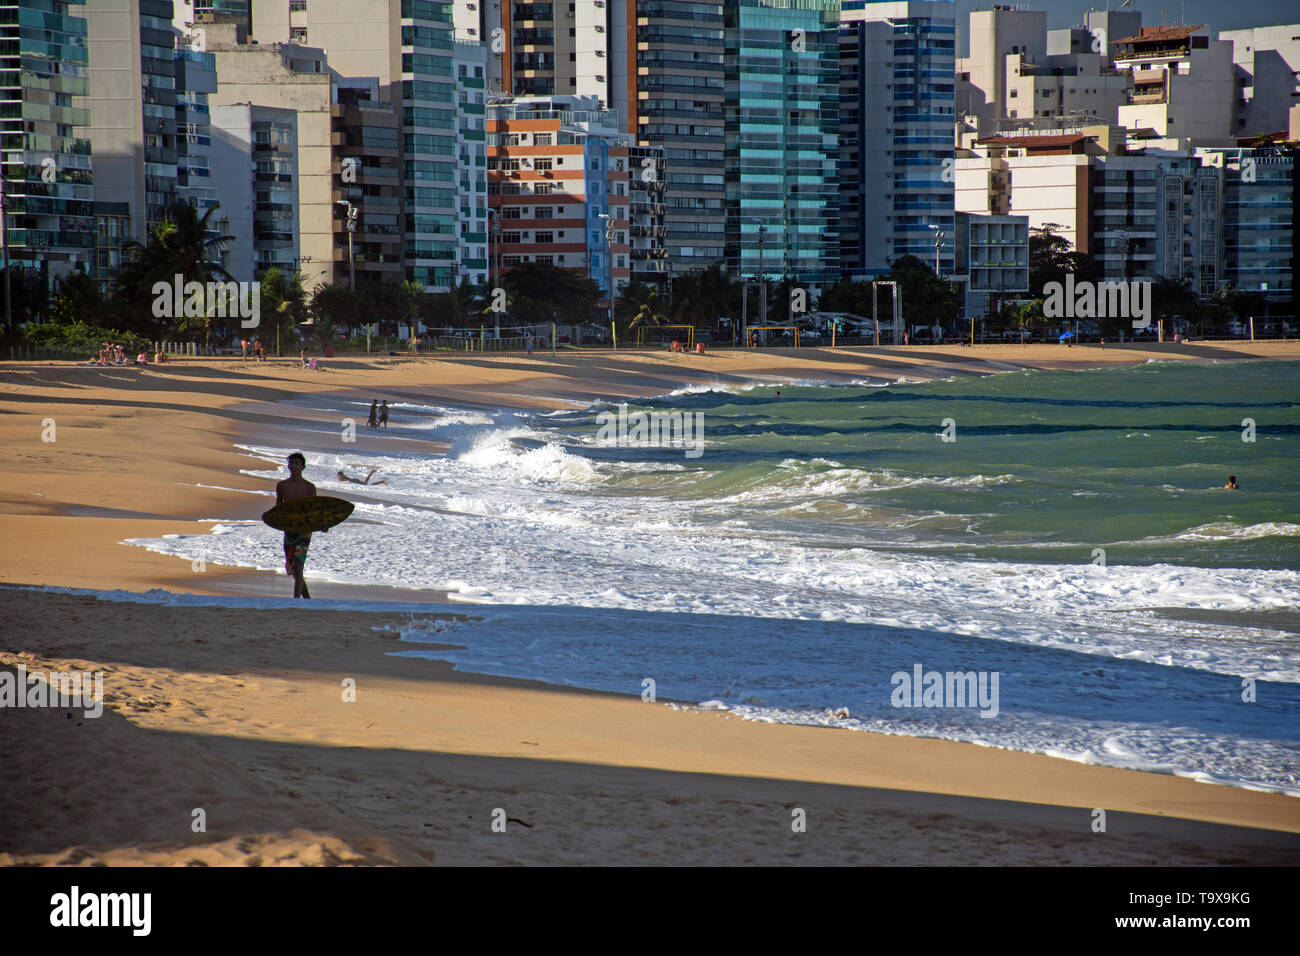 La sabbia del surfista gode di una spiaggia urbana, Praia da Costa, Vila Velha, Espirito Santo, Brasile Foto Stock